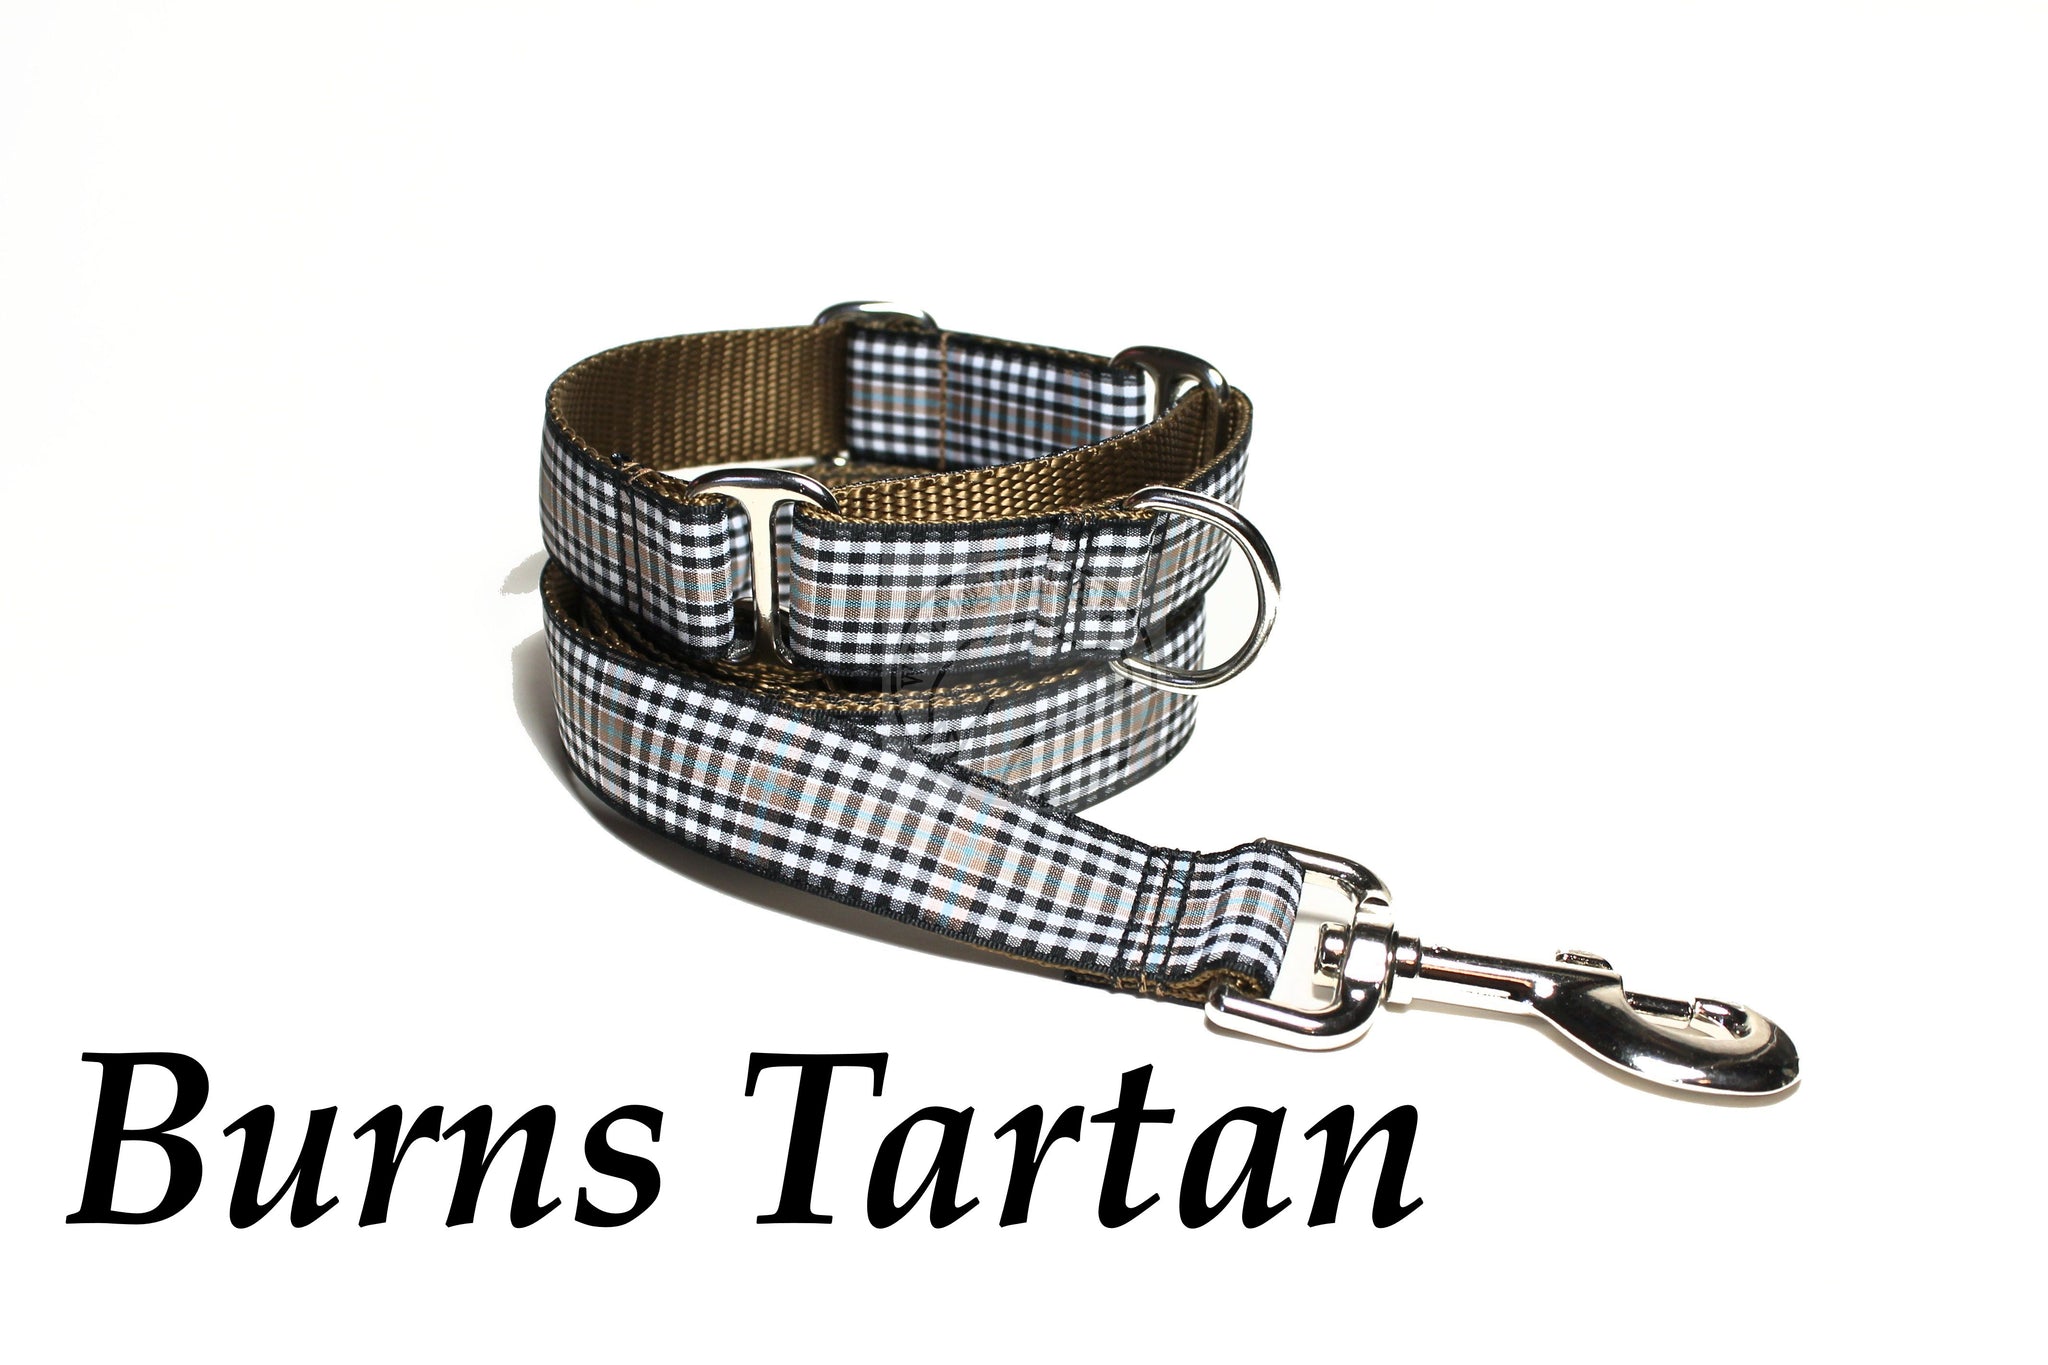 Tartan Dog Leash - Burns Clan Tartan